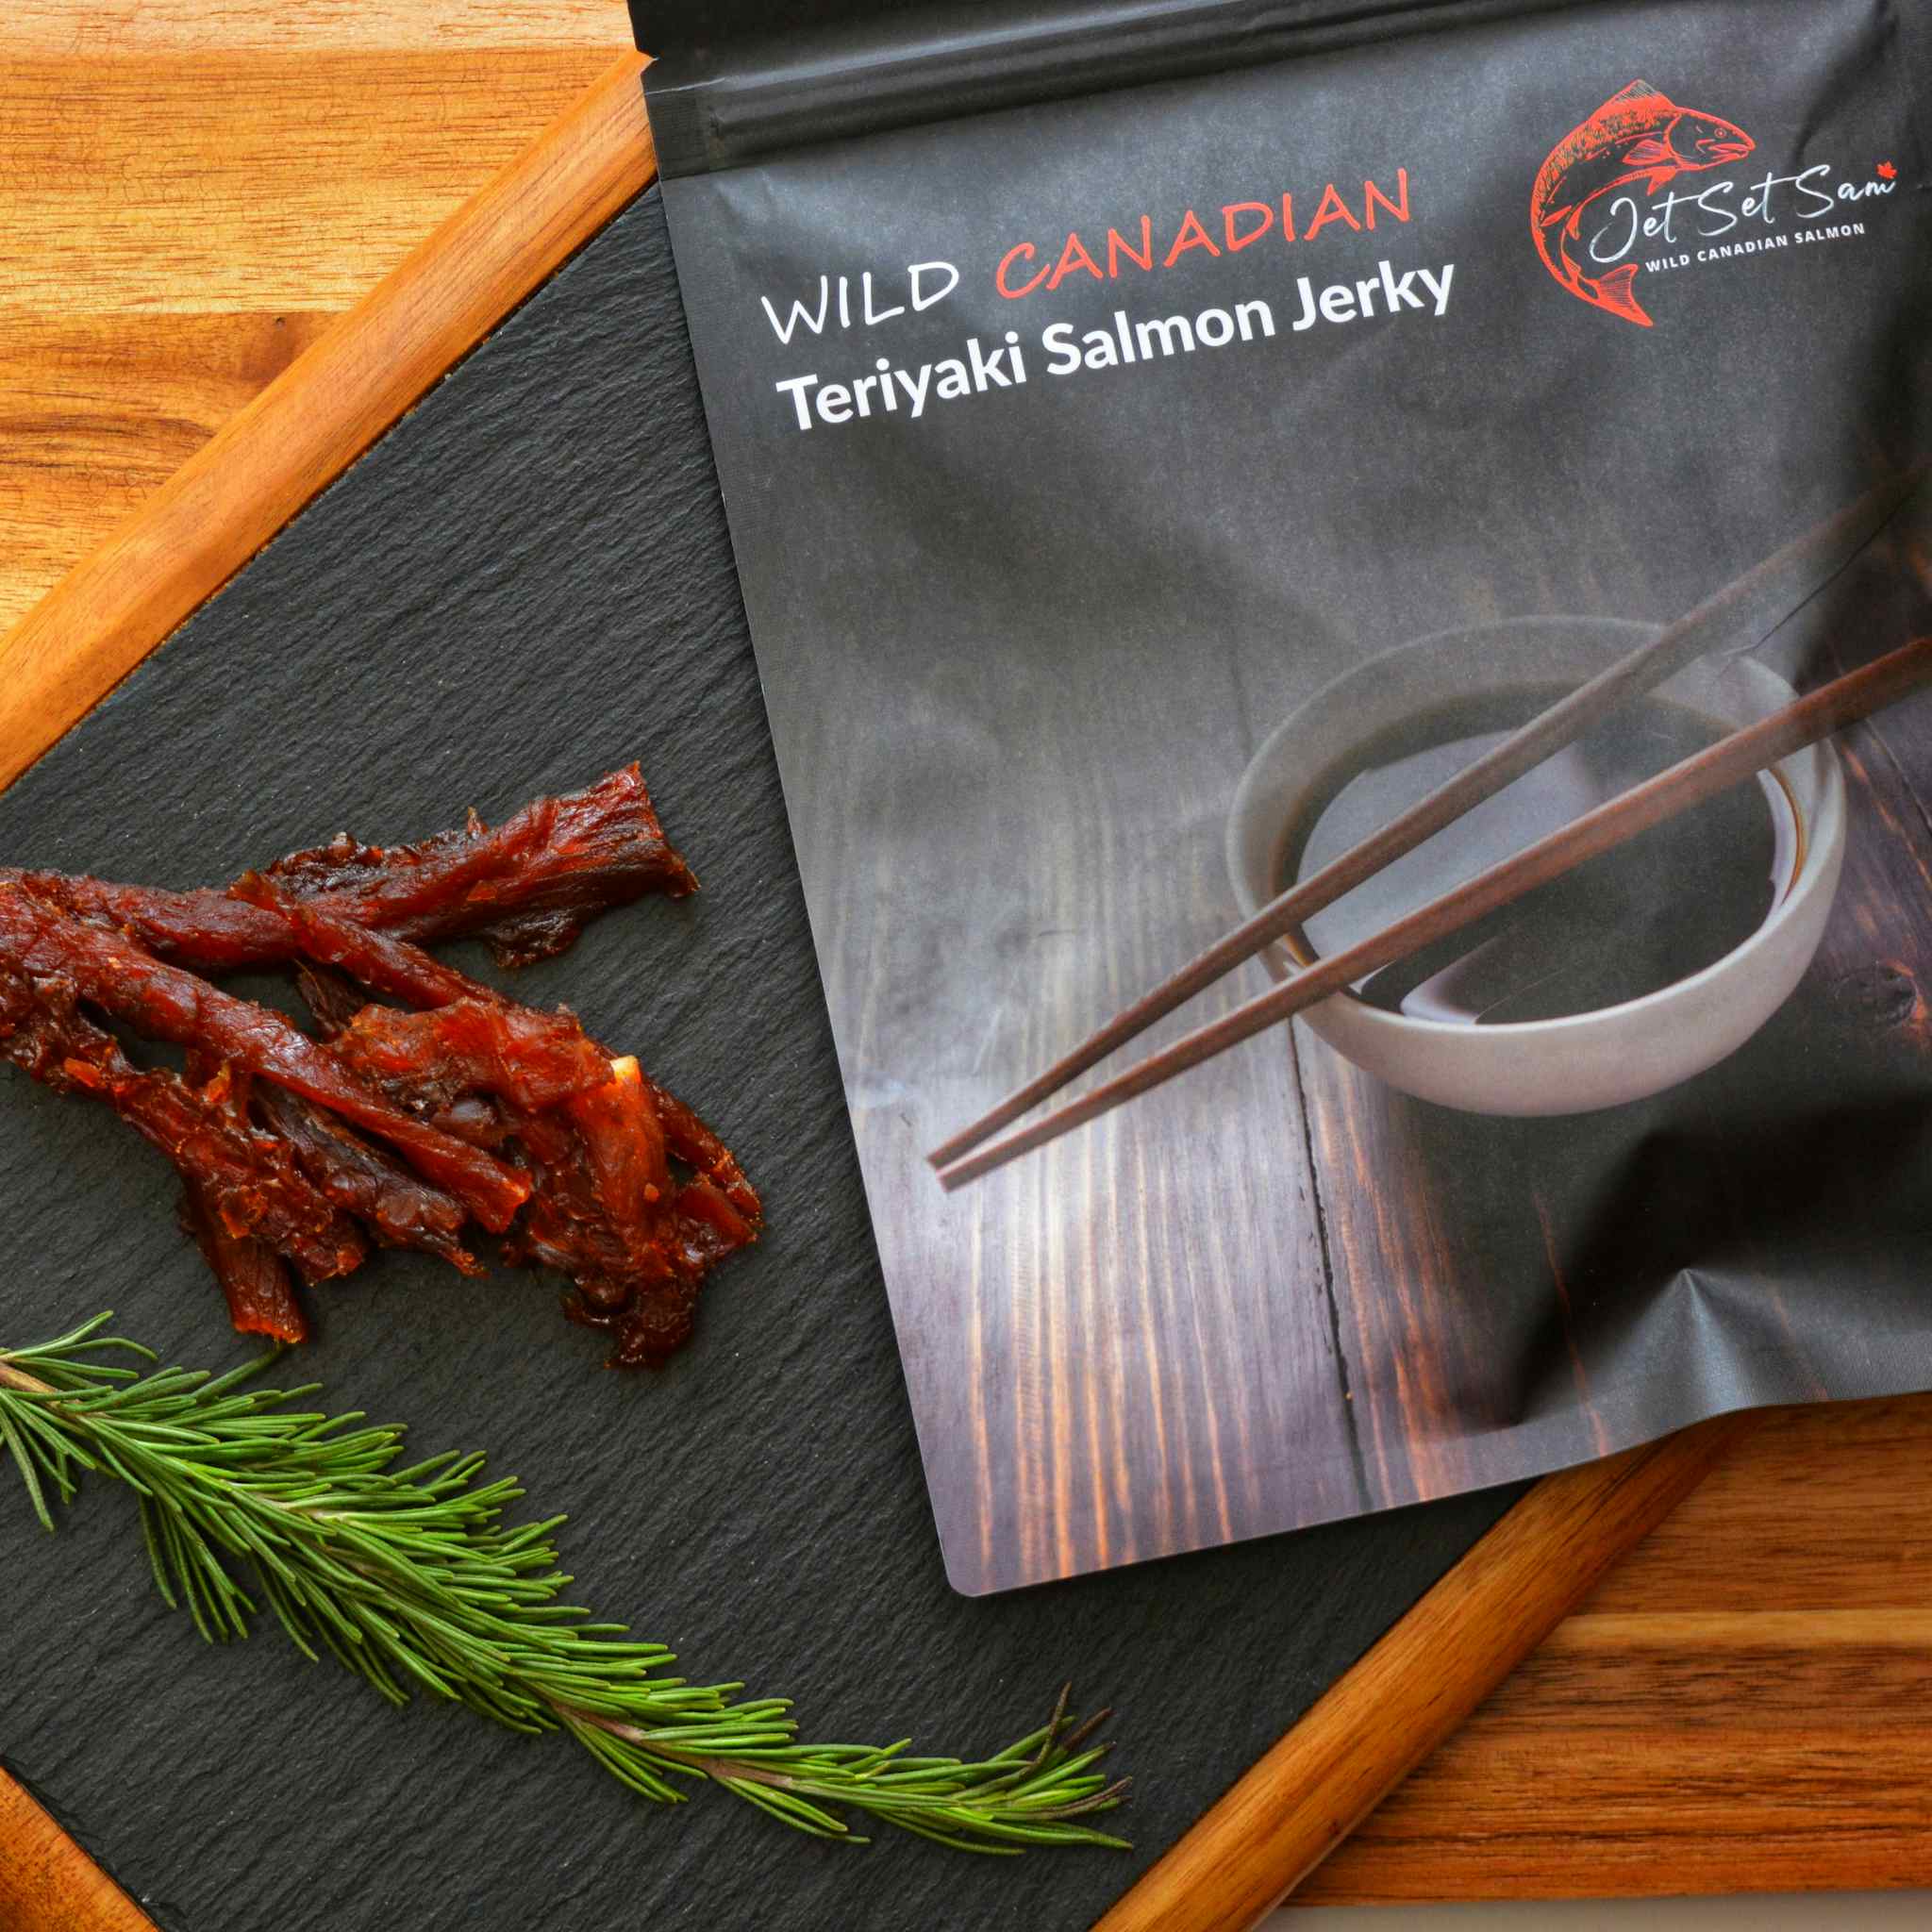 Wild Canadian Salmon Jerky Teriyaki Flavor